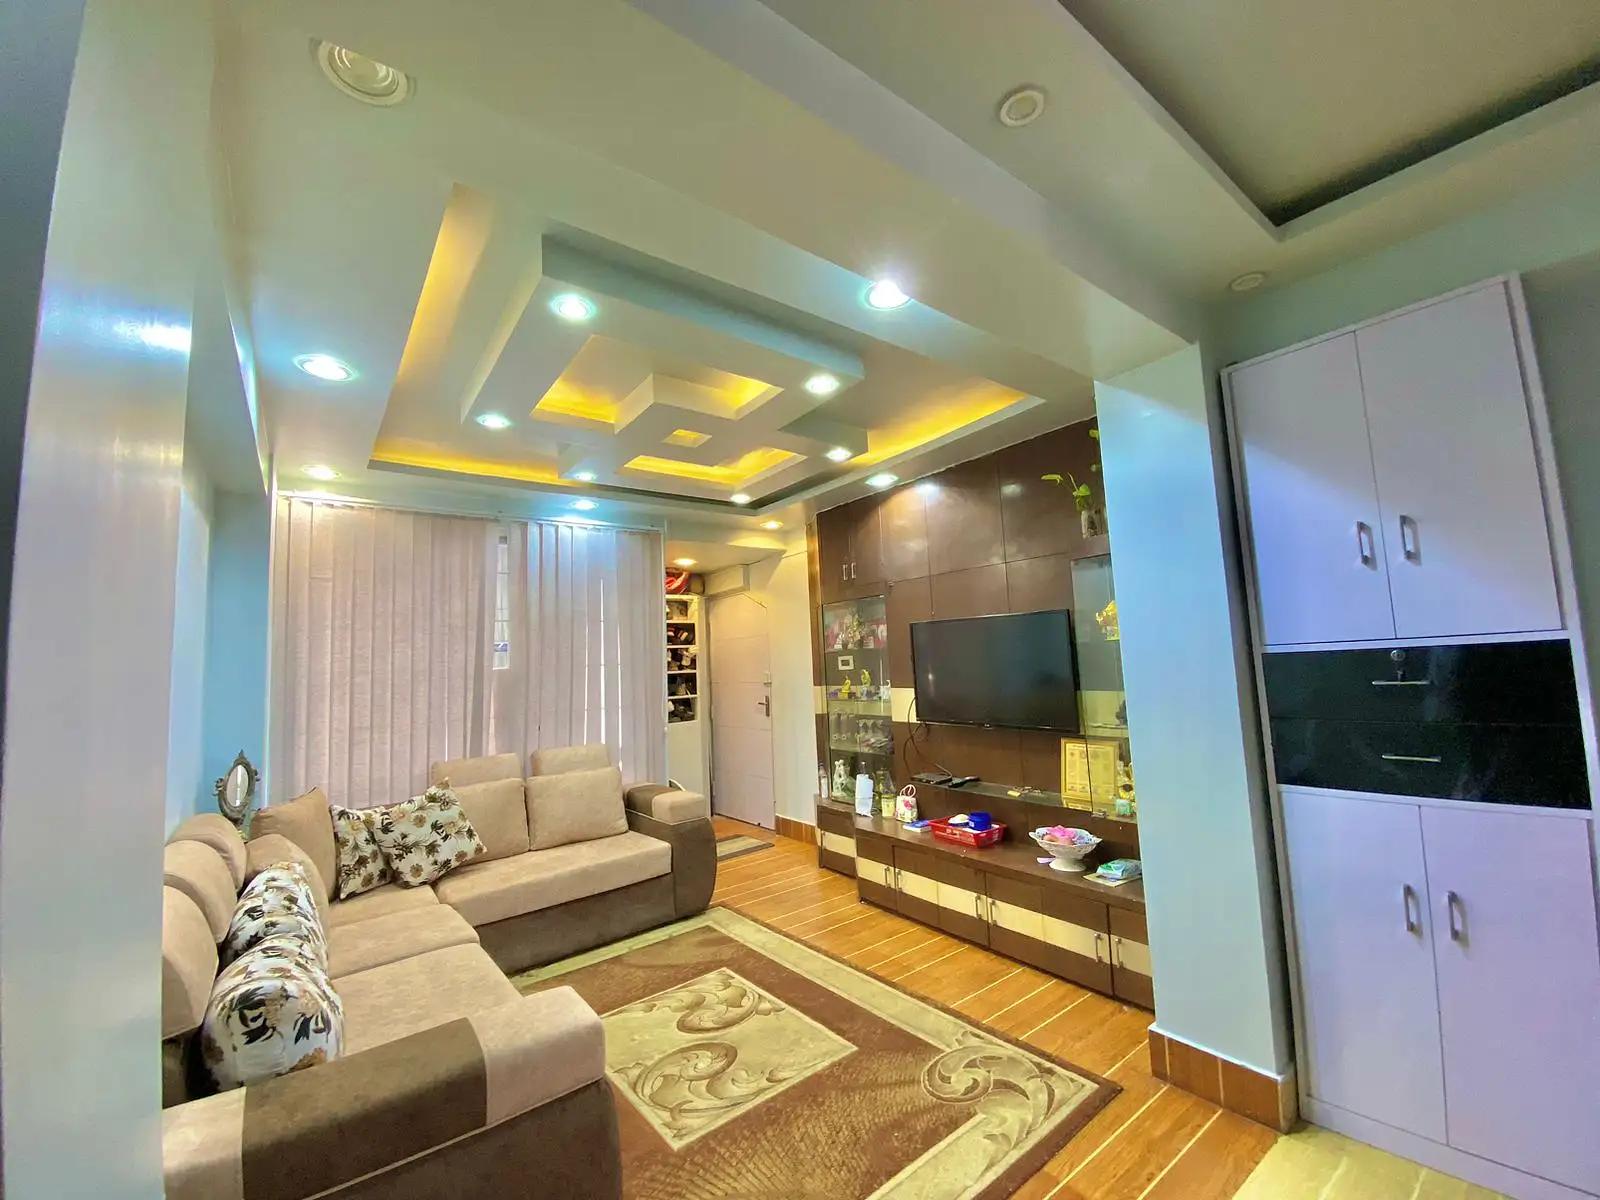 3BHK Fully Furnished Apartment On Sale at Sinamangal, Kathmandu.-image-2